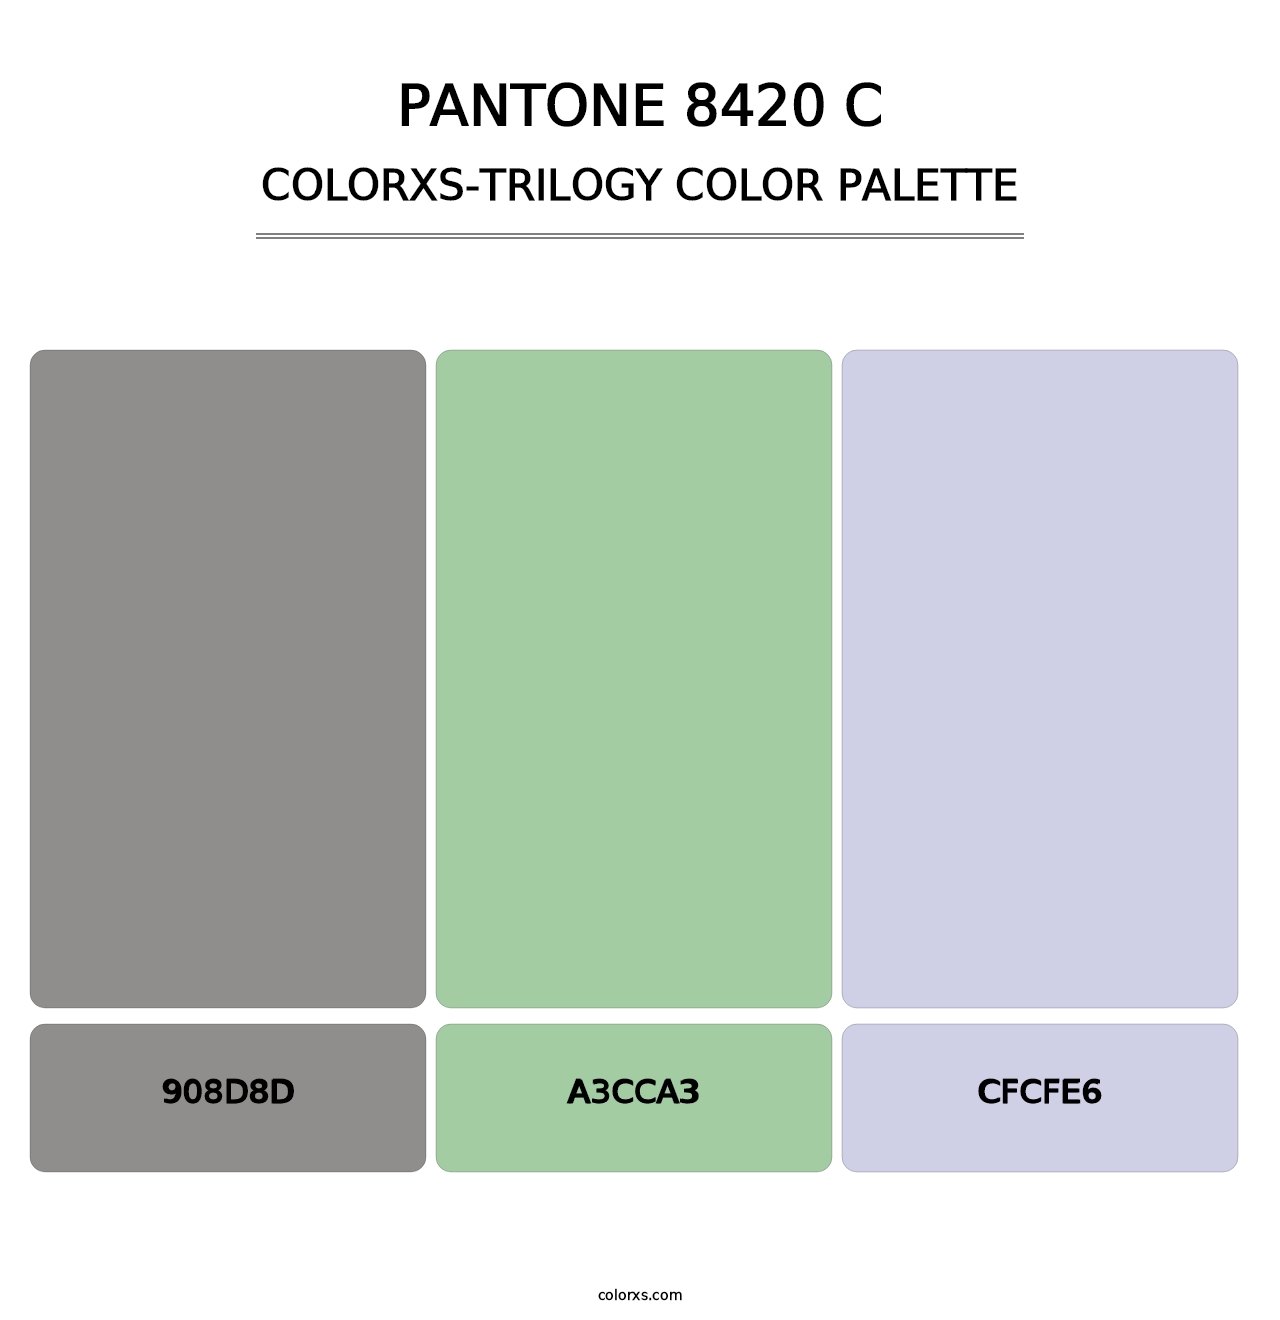 PANTONE 8420 C - Colorxs Trilogy Palette